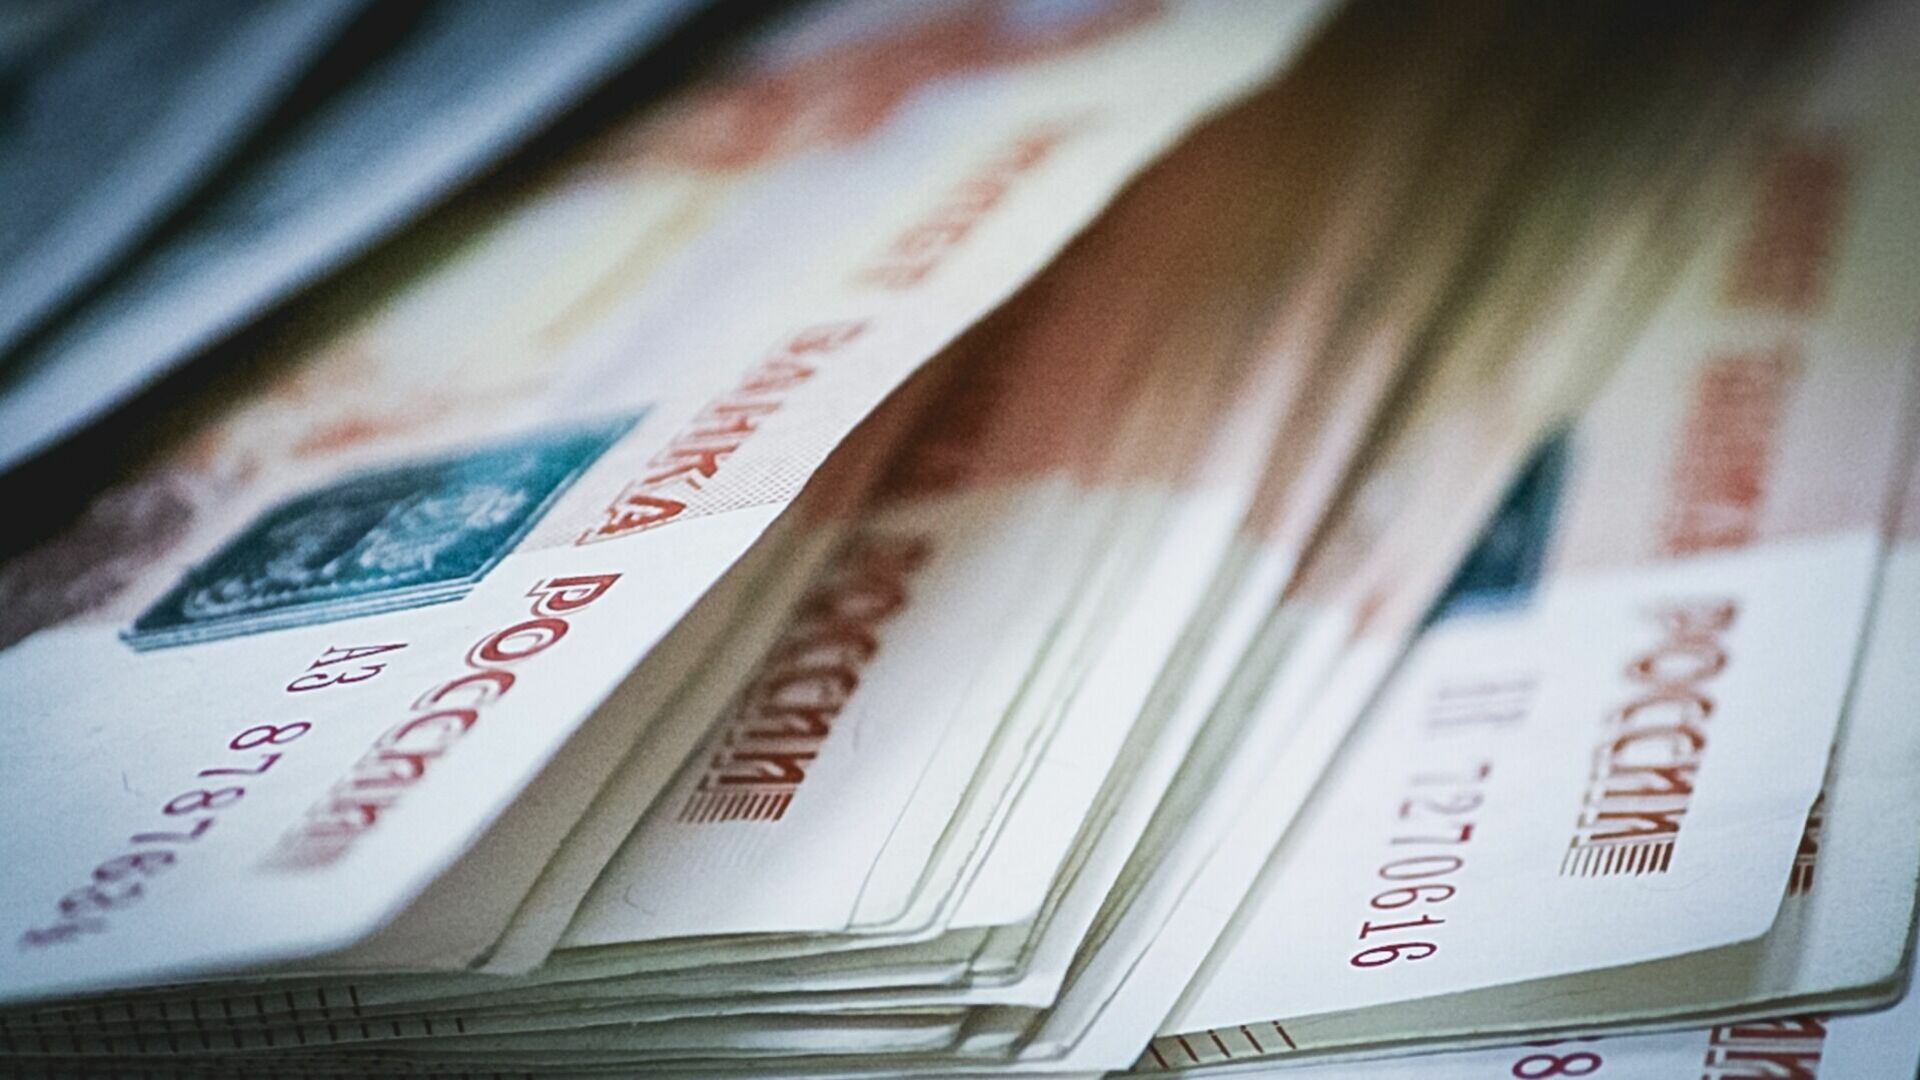 Лжесотрудник инвесткомпании лишил нижегородку миллиона рублей